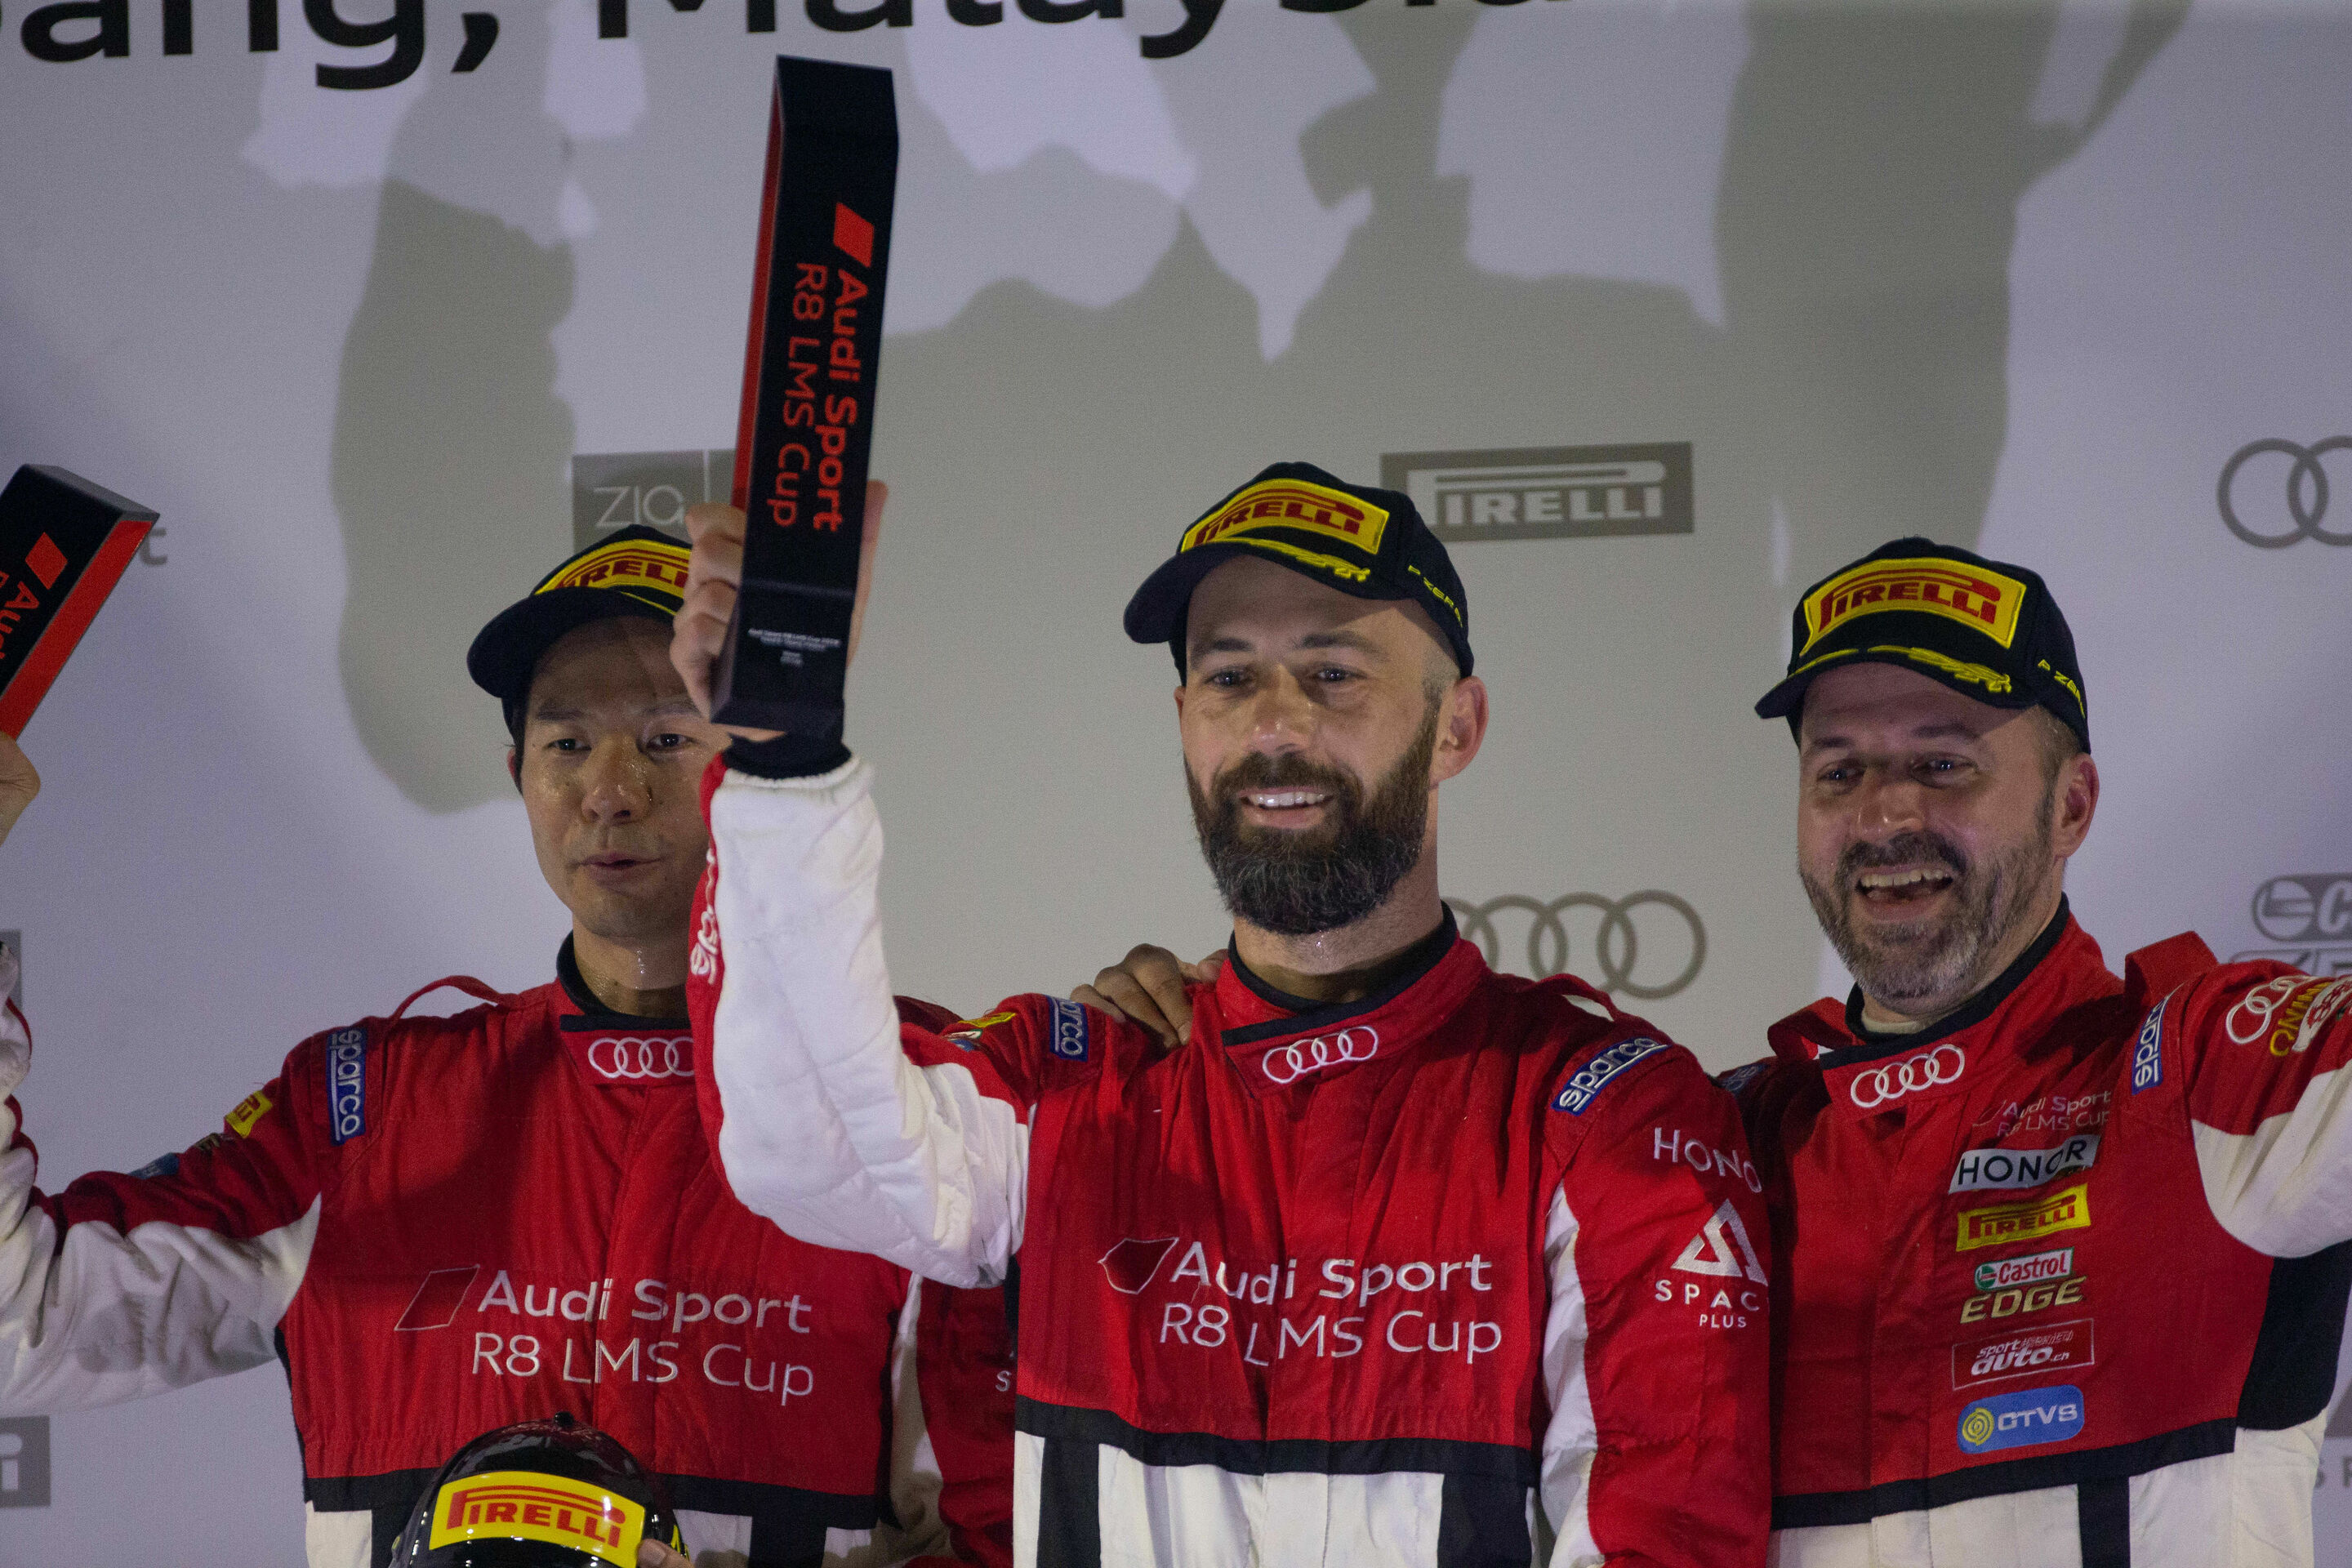 Audi Sport R8 LMS Cup 2019